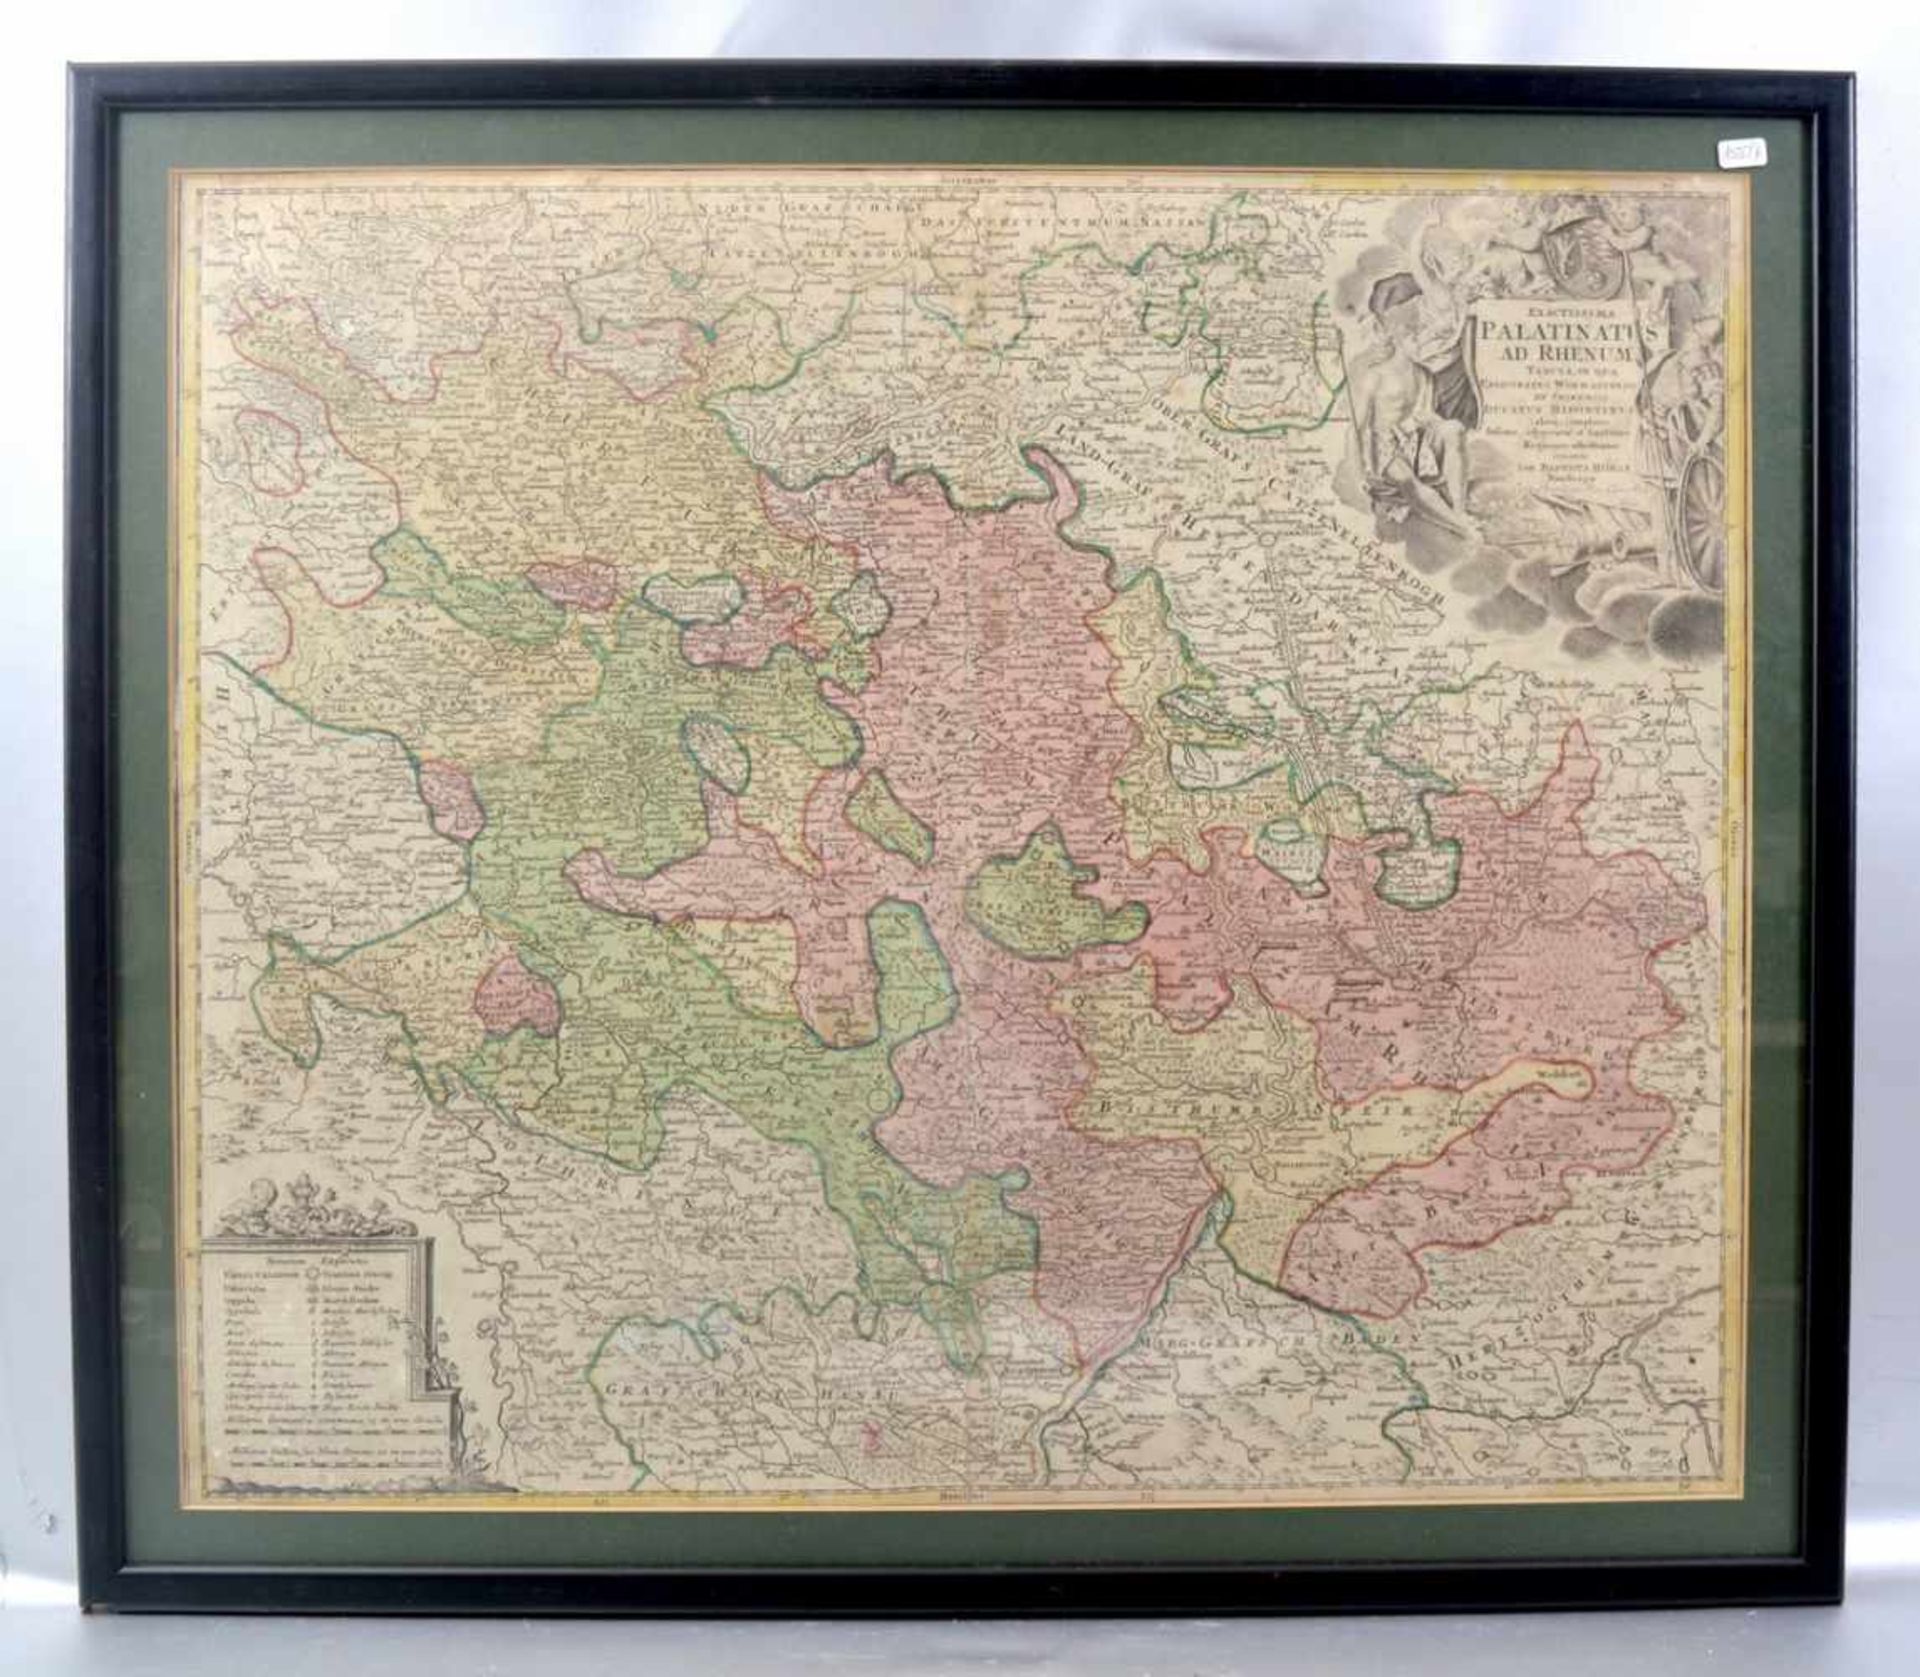 Landkarte Darmstadt, Mainz und Umgebung, teilweise coloriert, 48 X 57 cm, Rahmen, um 1800